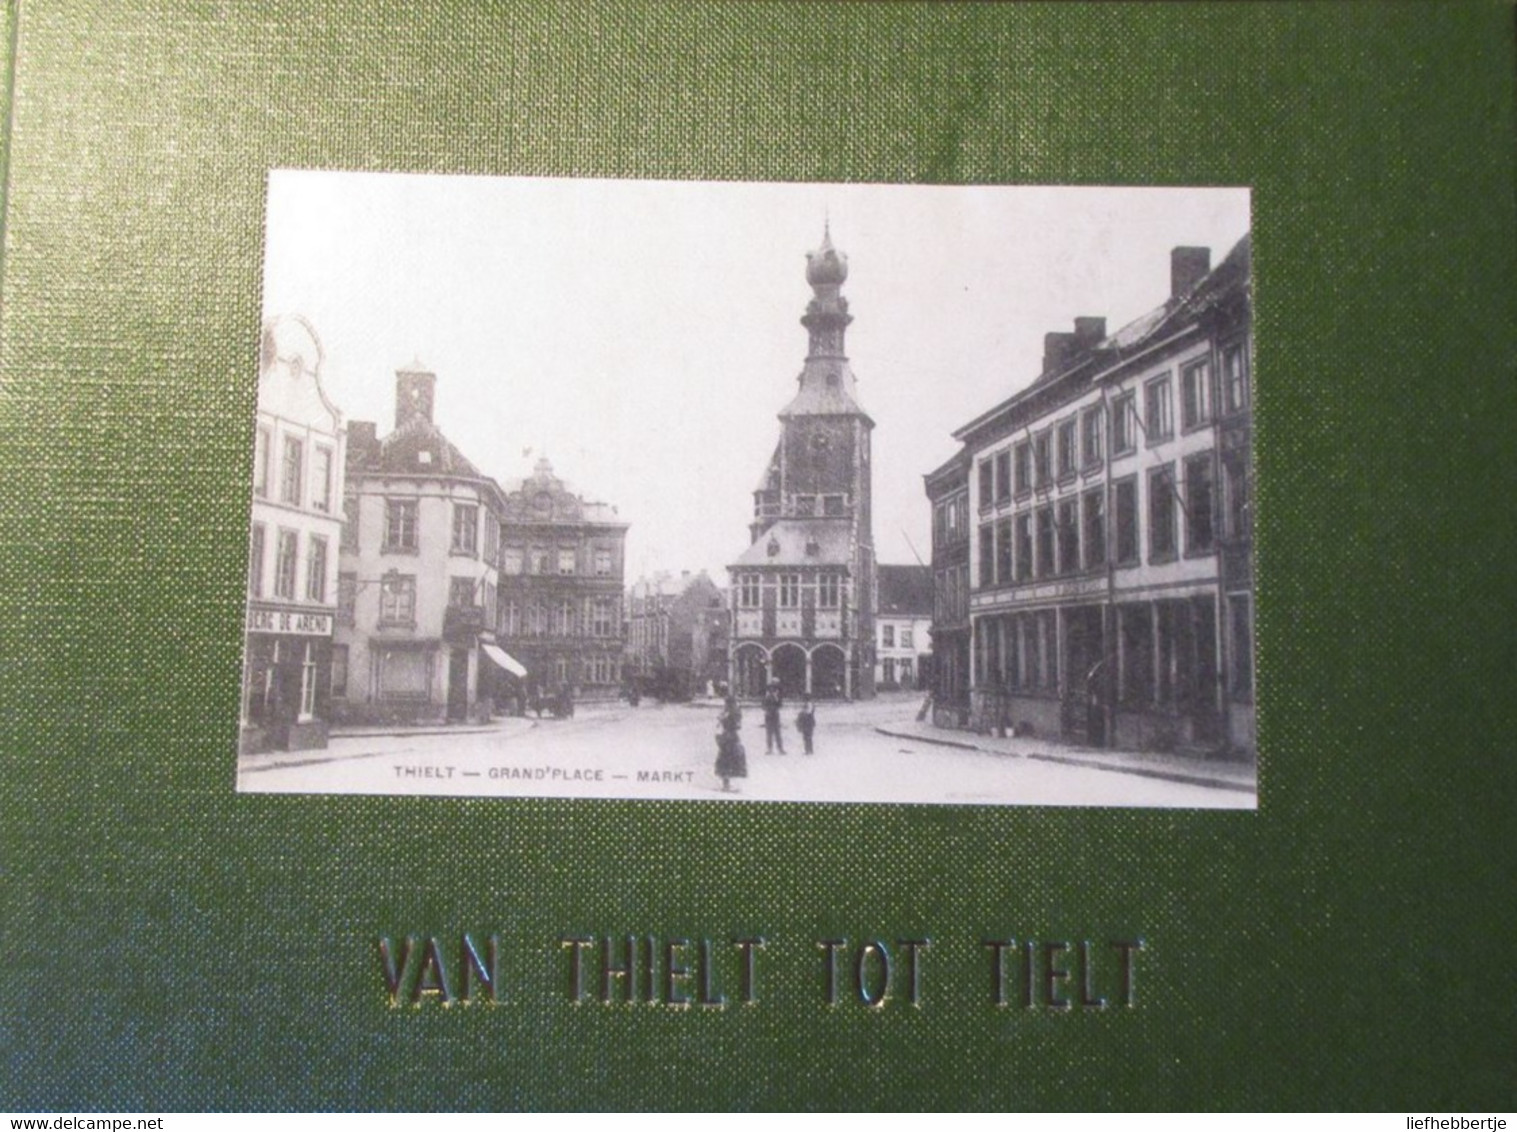 Van Thielt Tot Tielt - Postkaarten - 1975 - Historia